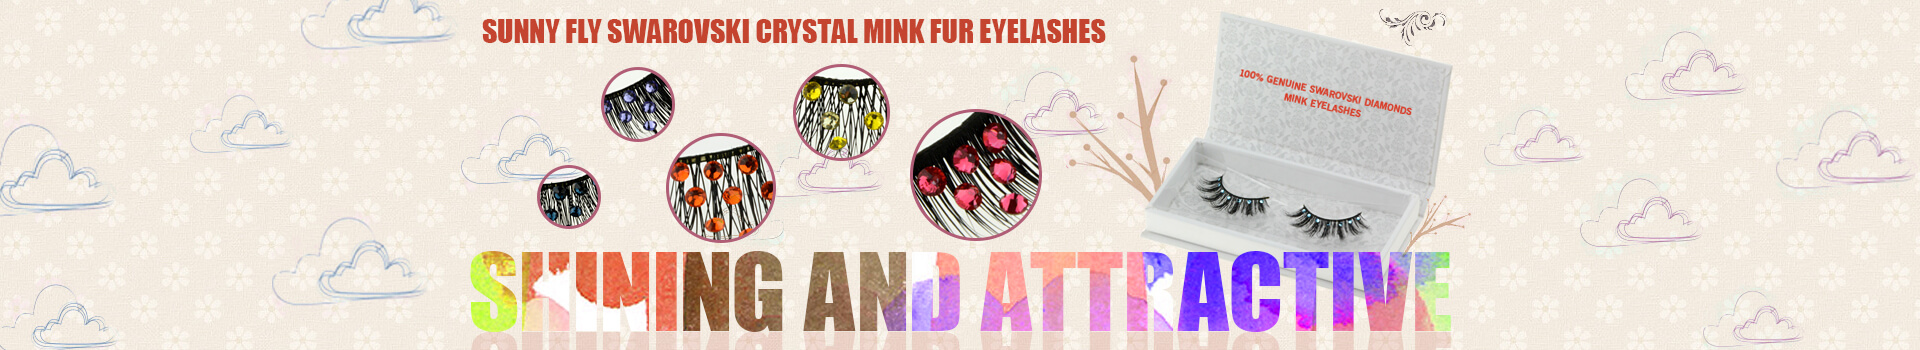 Swarovski Crystal Mink Fur Eyelashes MS26